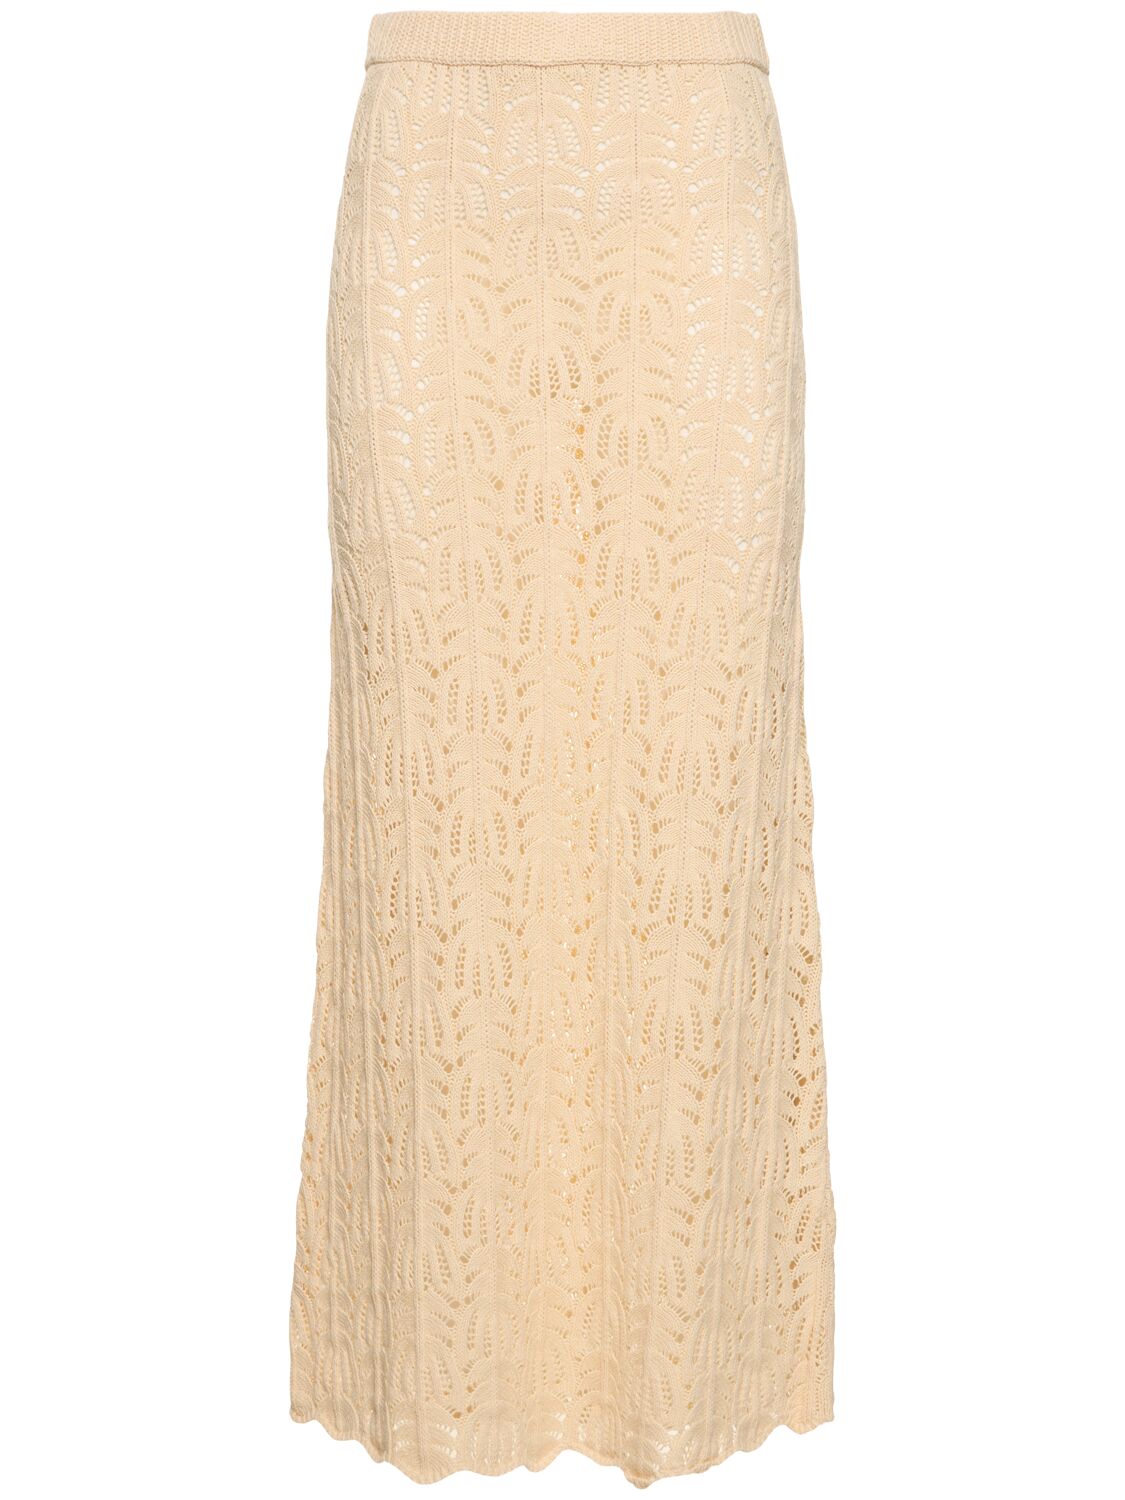 Image of Egypt Crochet Cotton Linen Long Skirt